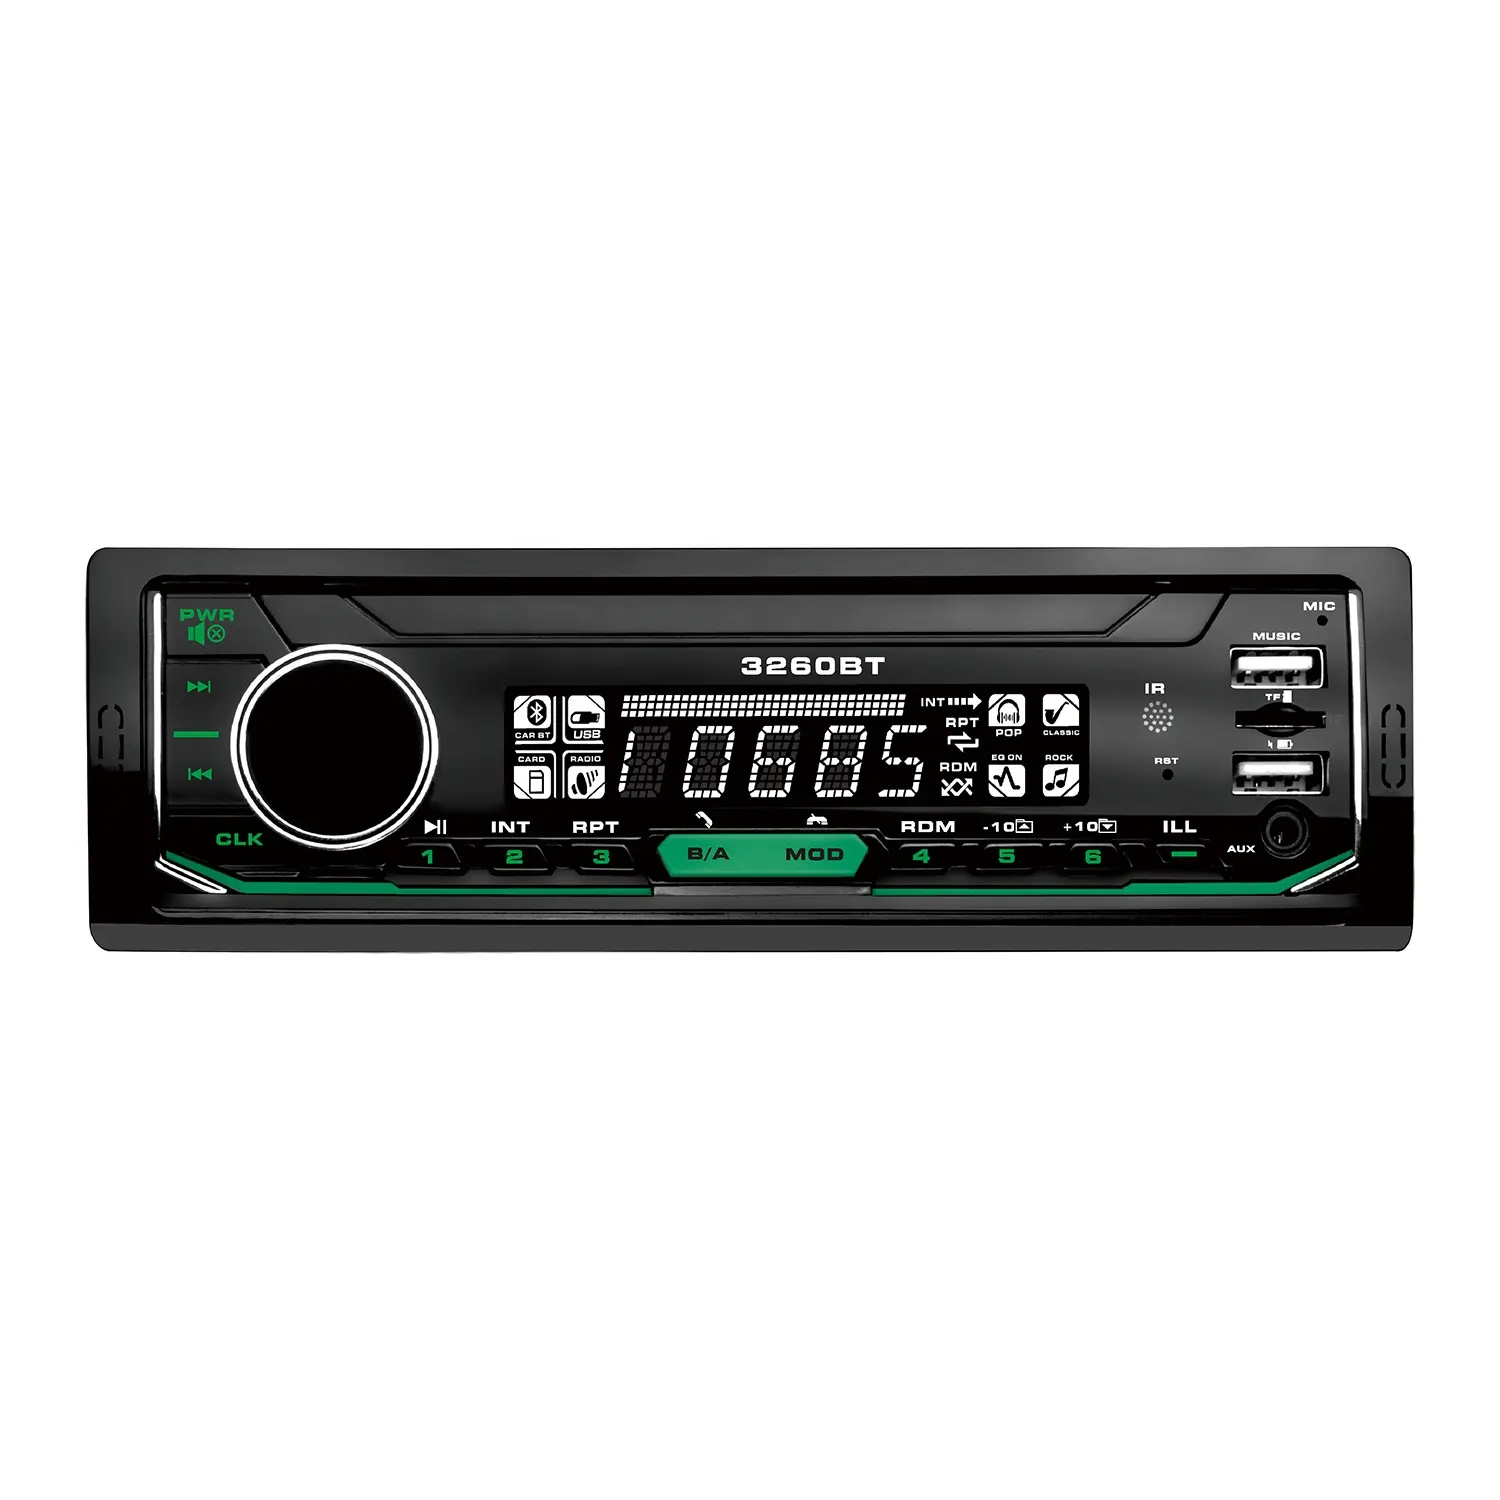 Pemutar Dvd Mobil Universal BT 7388ic, Radio mobil kontrol seluler dengan fungsi pemutar MP3 LCD Digital kustom harga rendah untuk mobil